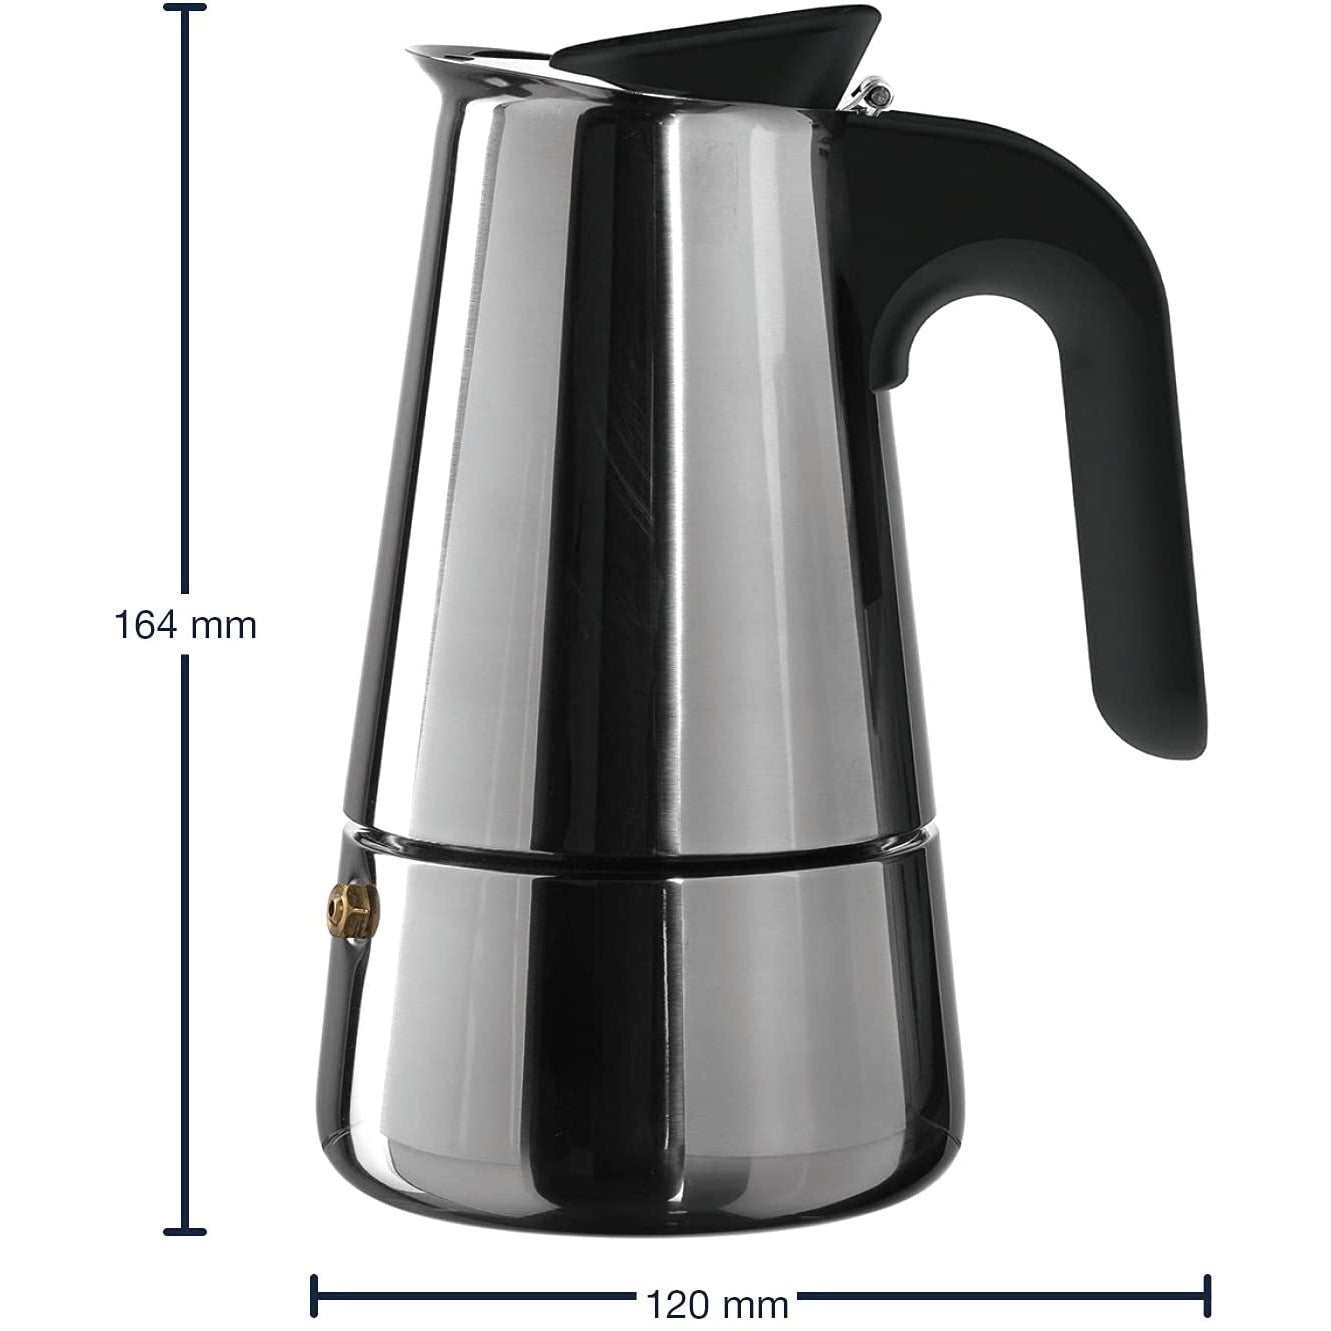 GB/espresso maker, 0.2lt - CAFFE'